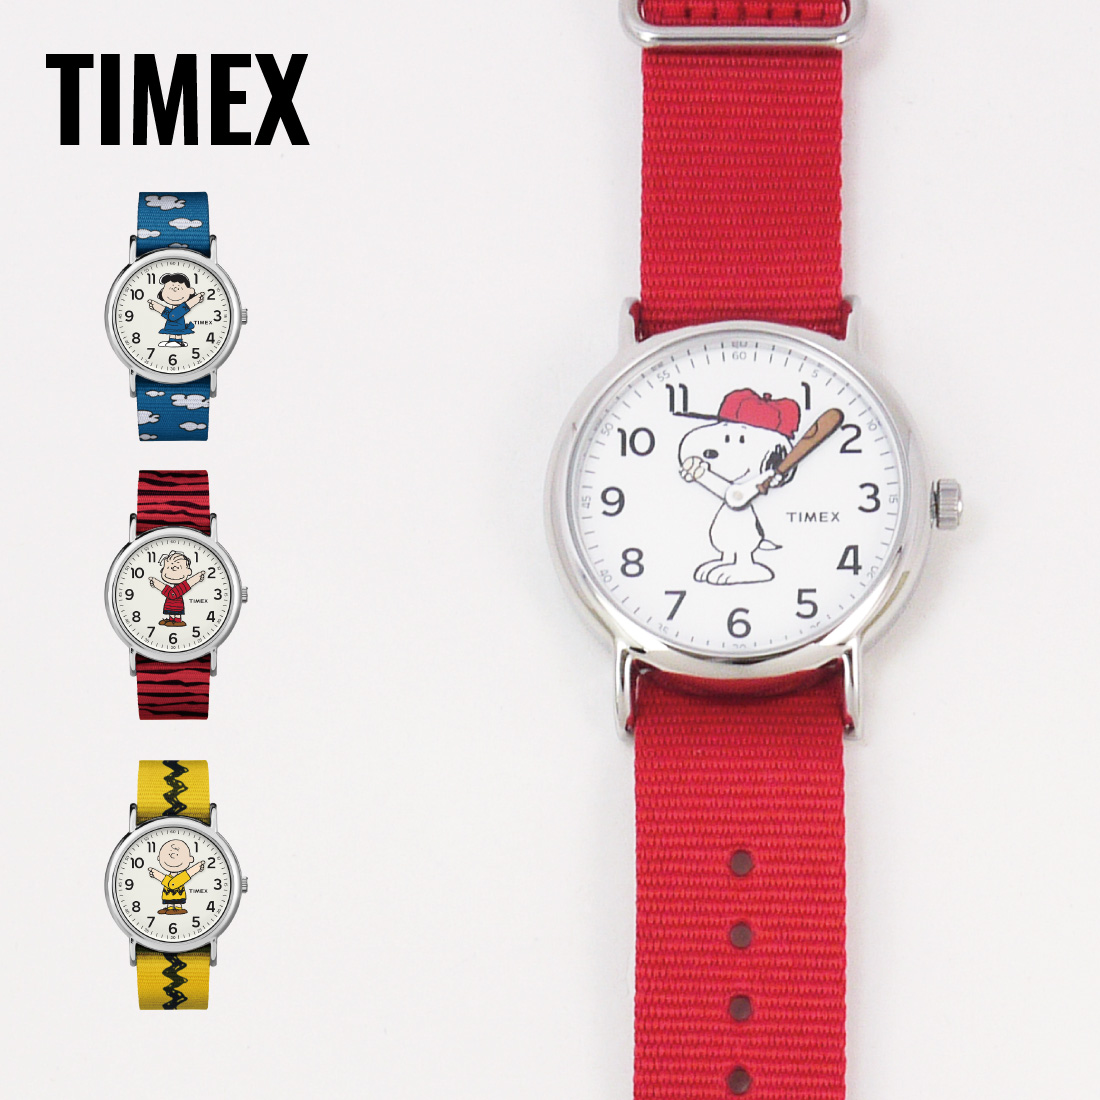 TIMEX タイメックス ウィークエンダー Peanuts ピーナッツ Snoopy スヌーピー TW2R41400 レッド 腕時計 送料無料  :TW2R41400:腕時計ショップ newest 通販 